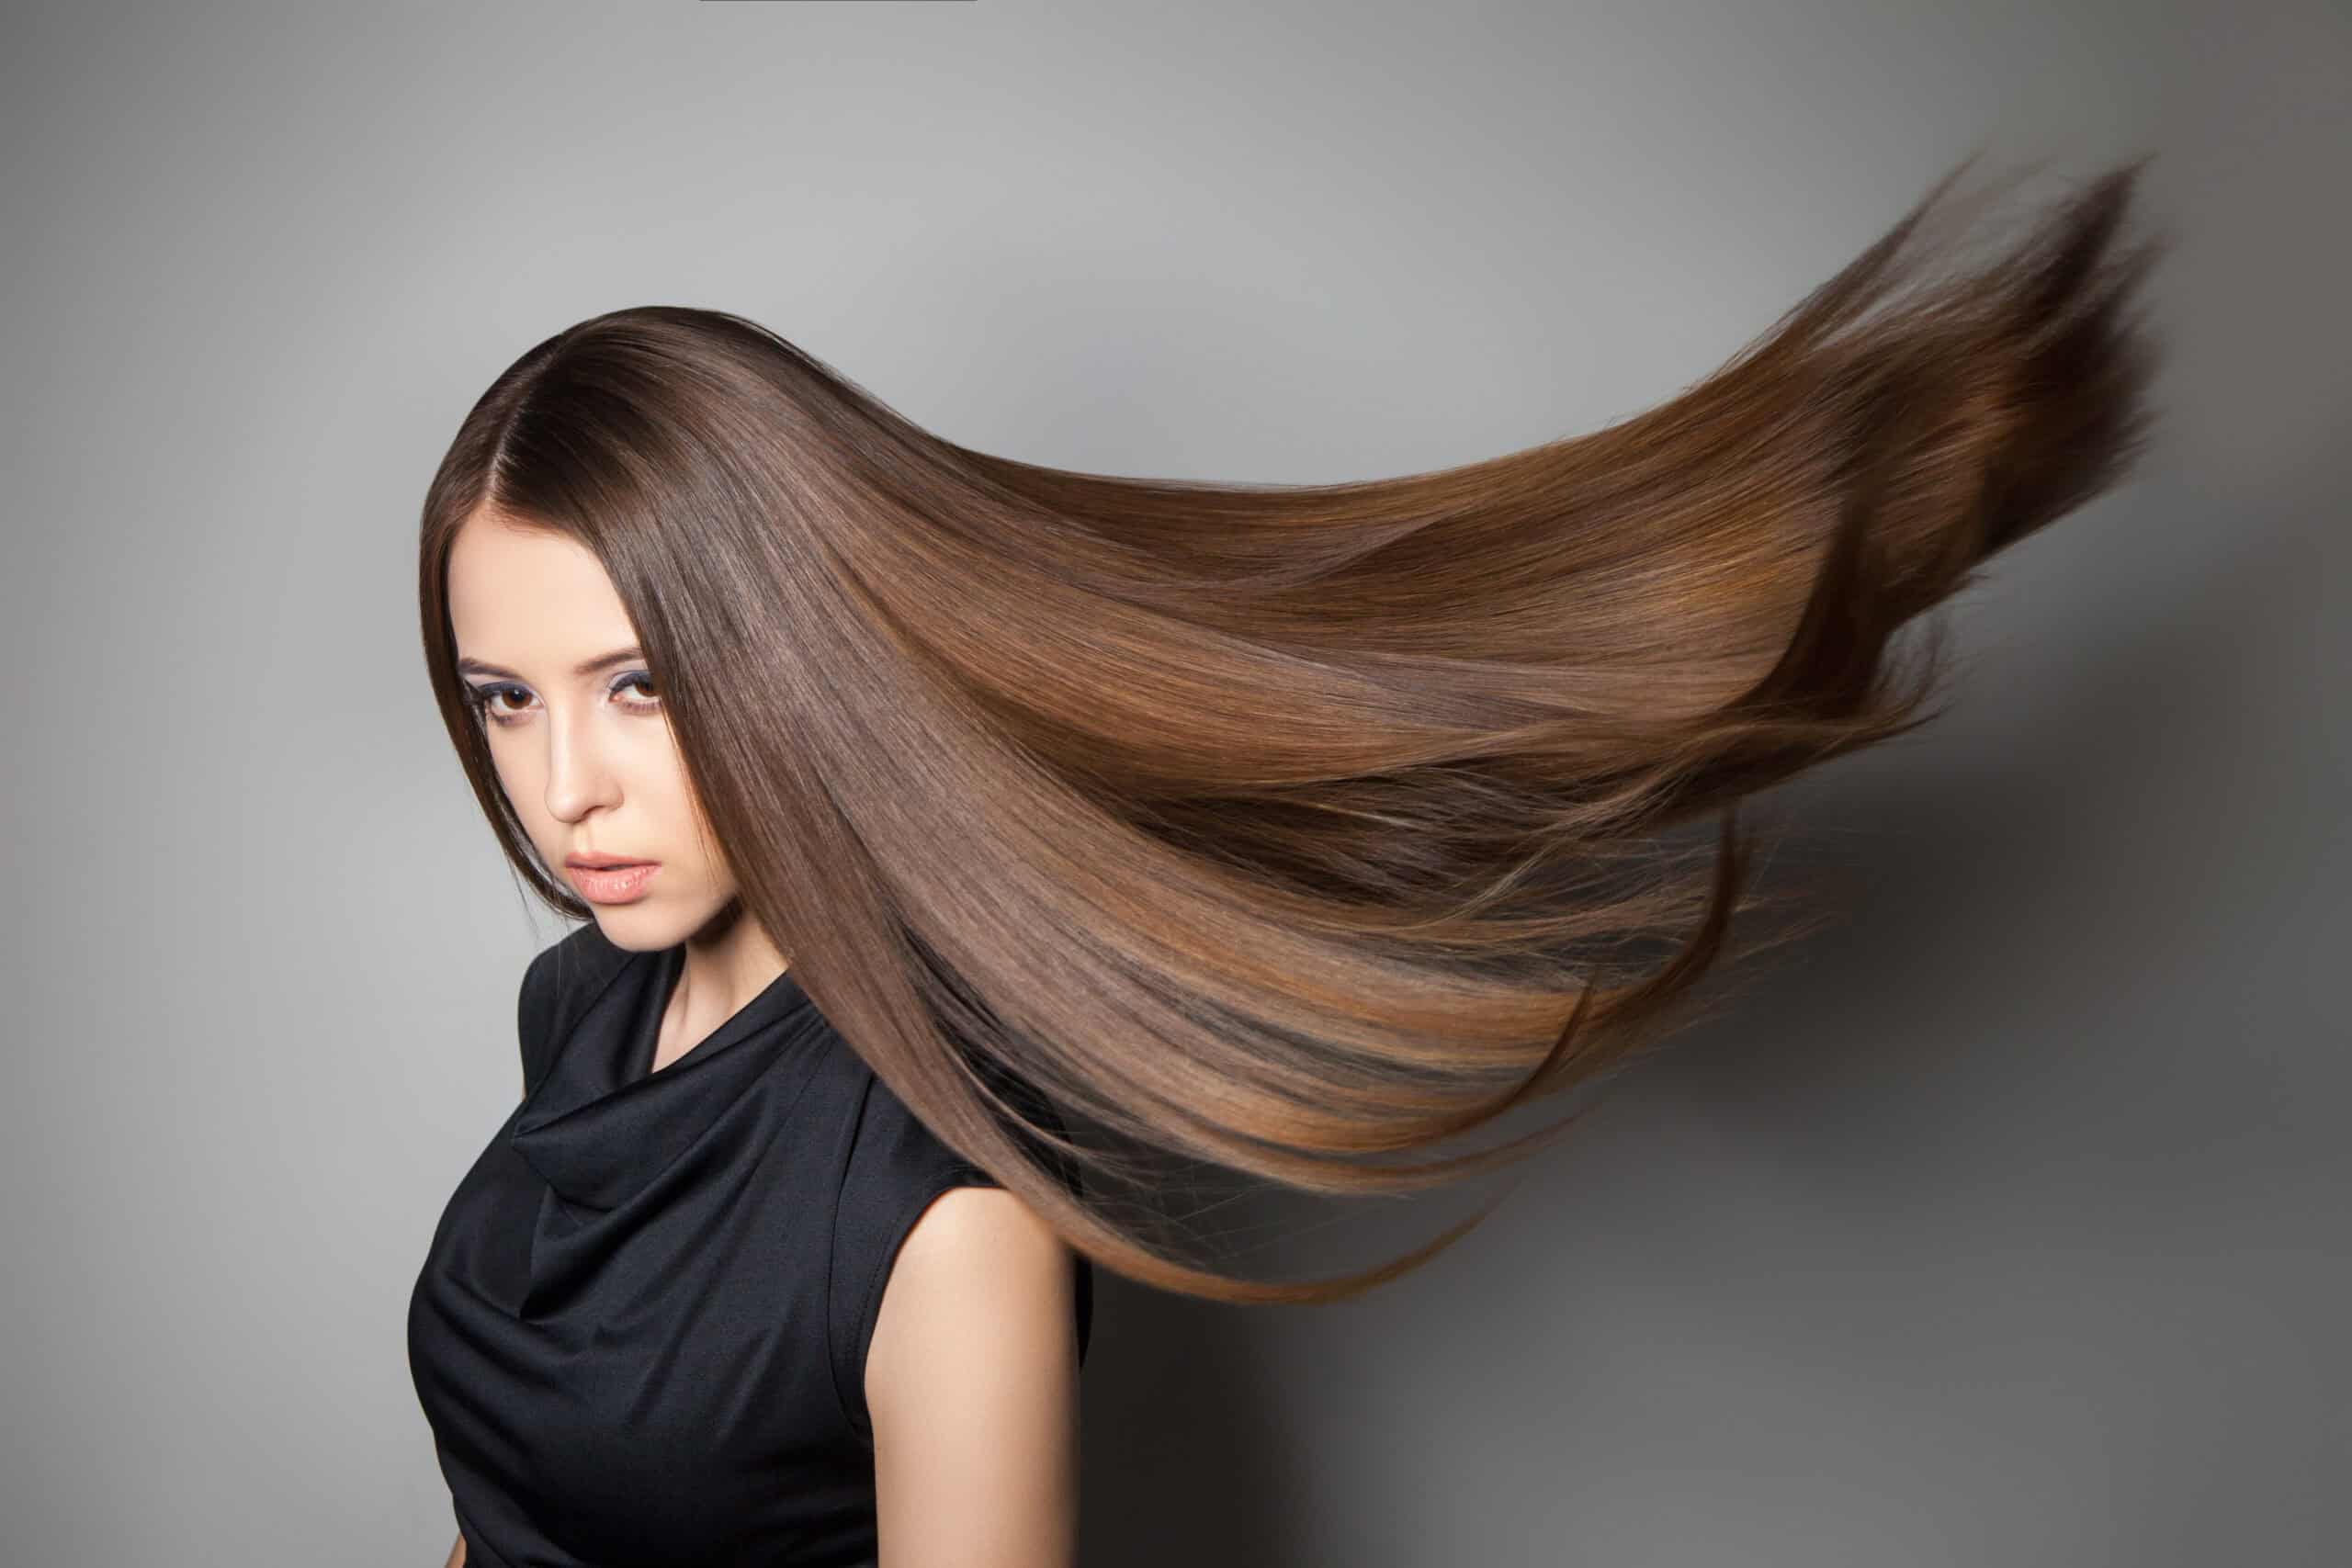 Na zdjęciu widoczna jest młoda kobieta, która ma długie brązowe włosy, które są rozwiane przez wiatr. 